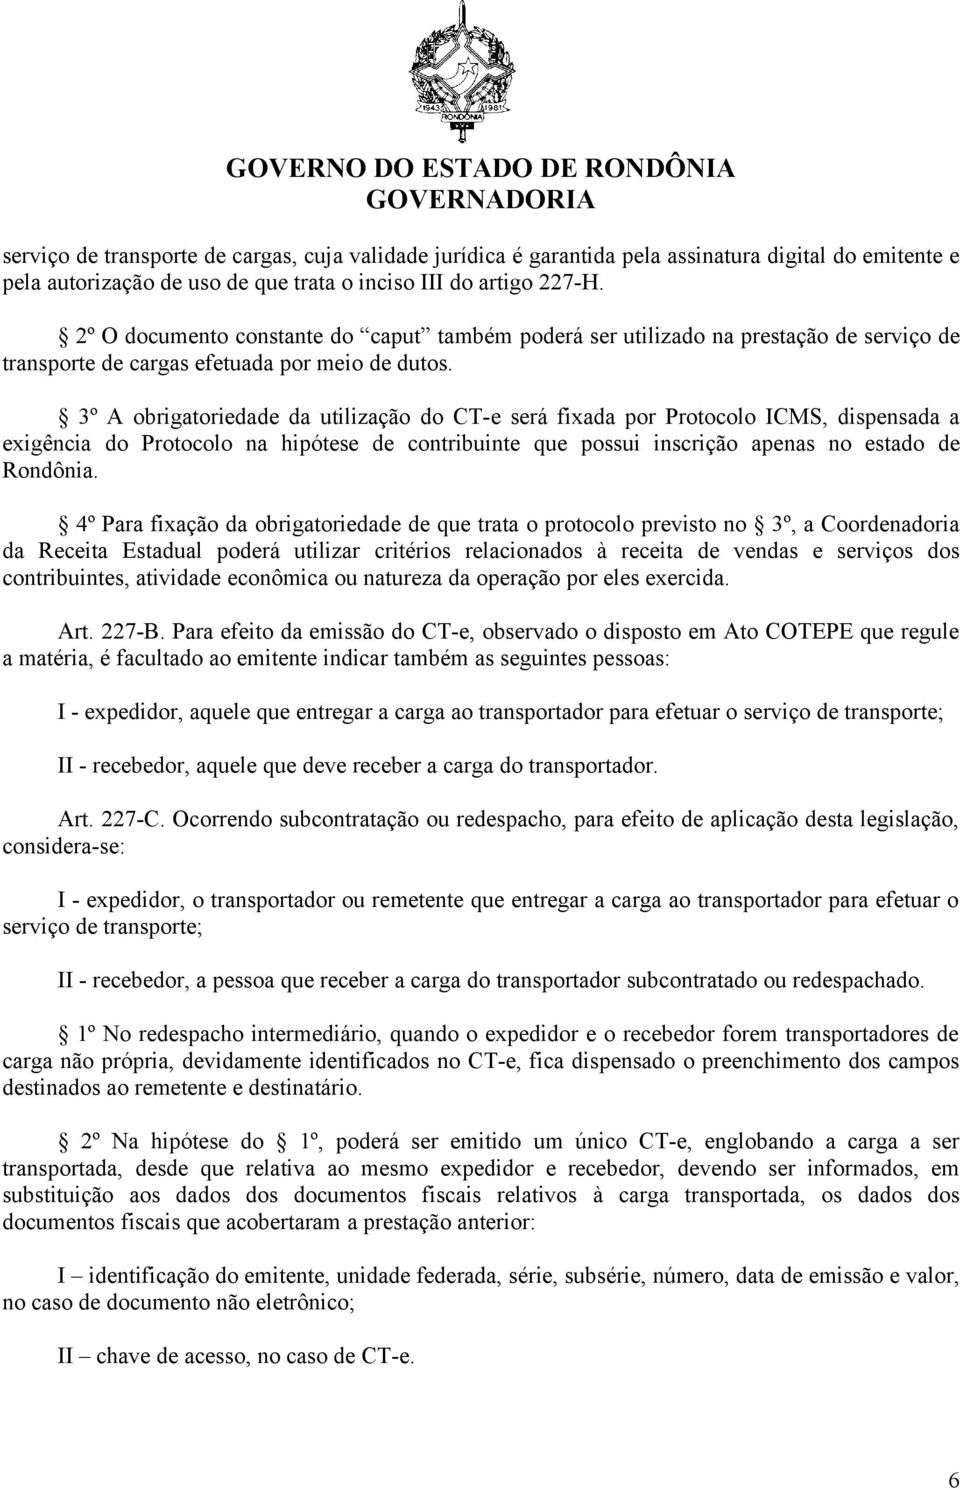 3º A obrigatoriedade da utilização do CT-e será fixada por Protocolo ICMS, dispensada a exigência do Protocolo na hipótese de contribuinte que possui inscrição apenas no estado de Rondônia.